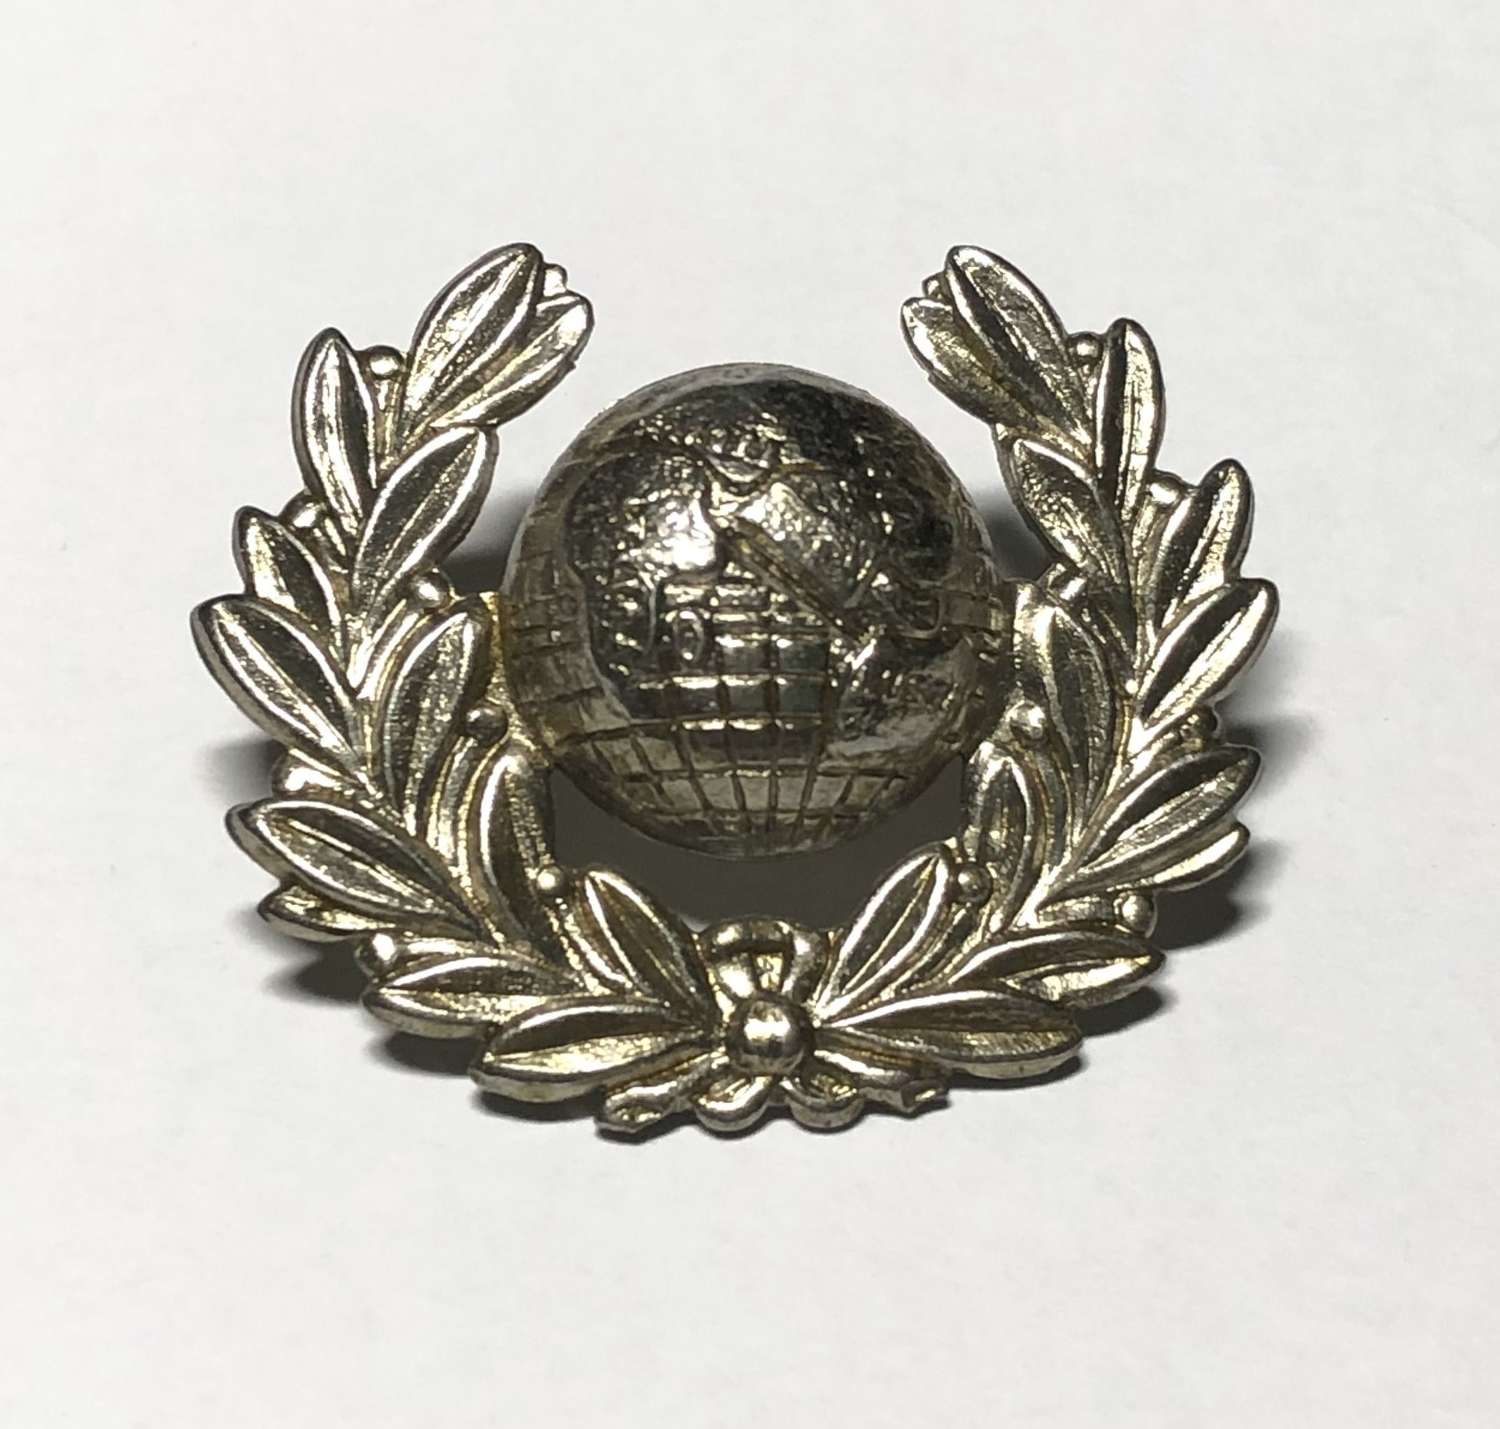 Royal Marine Police white metal cap badge circa 1922-49